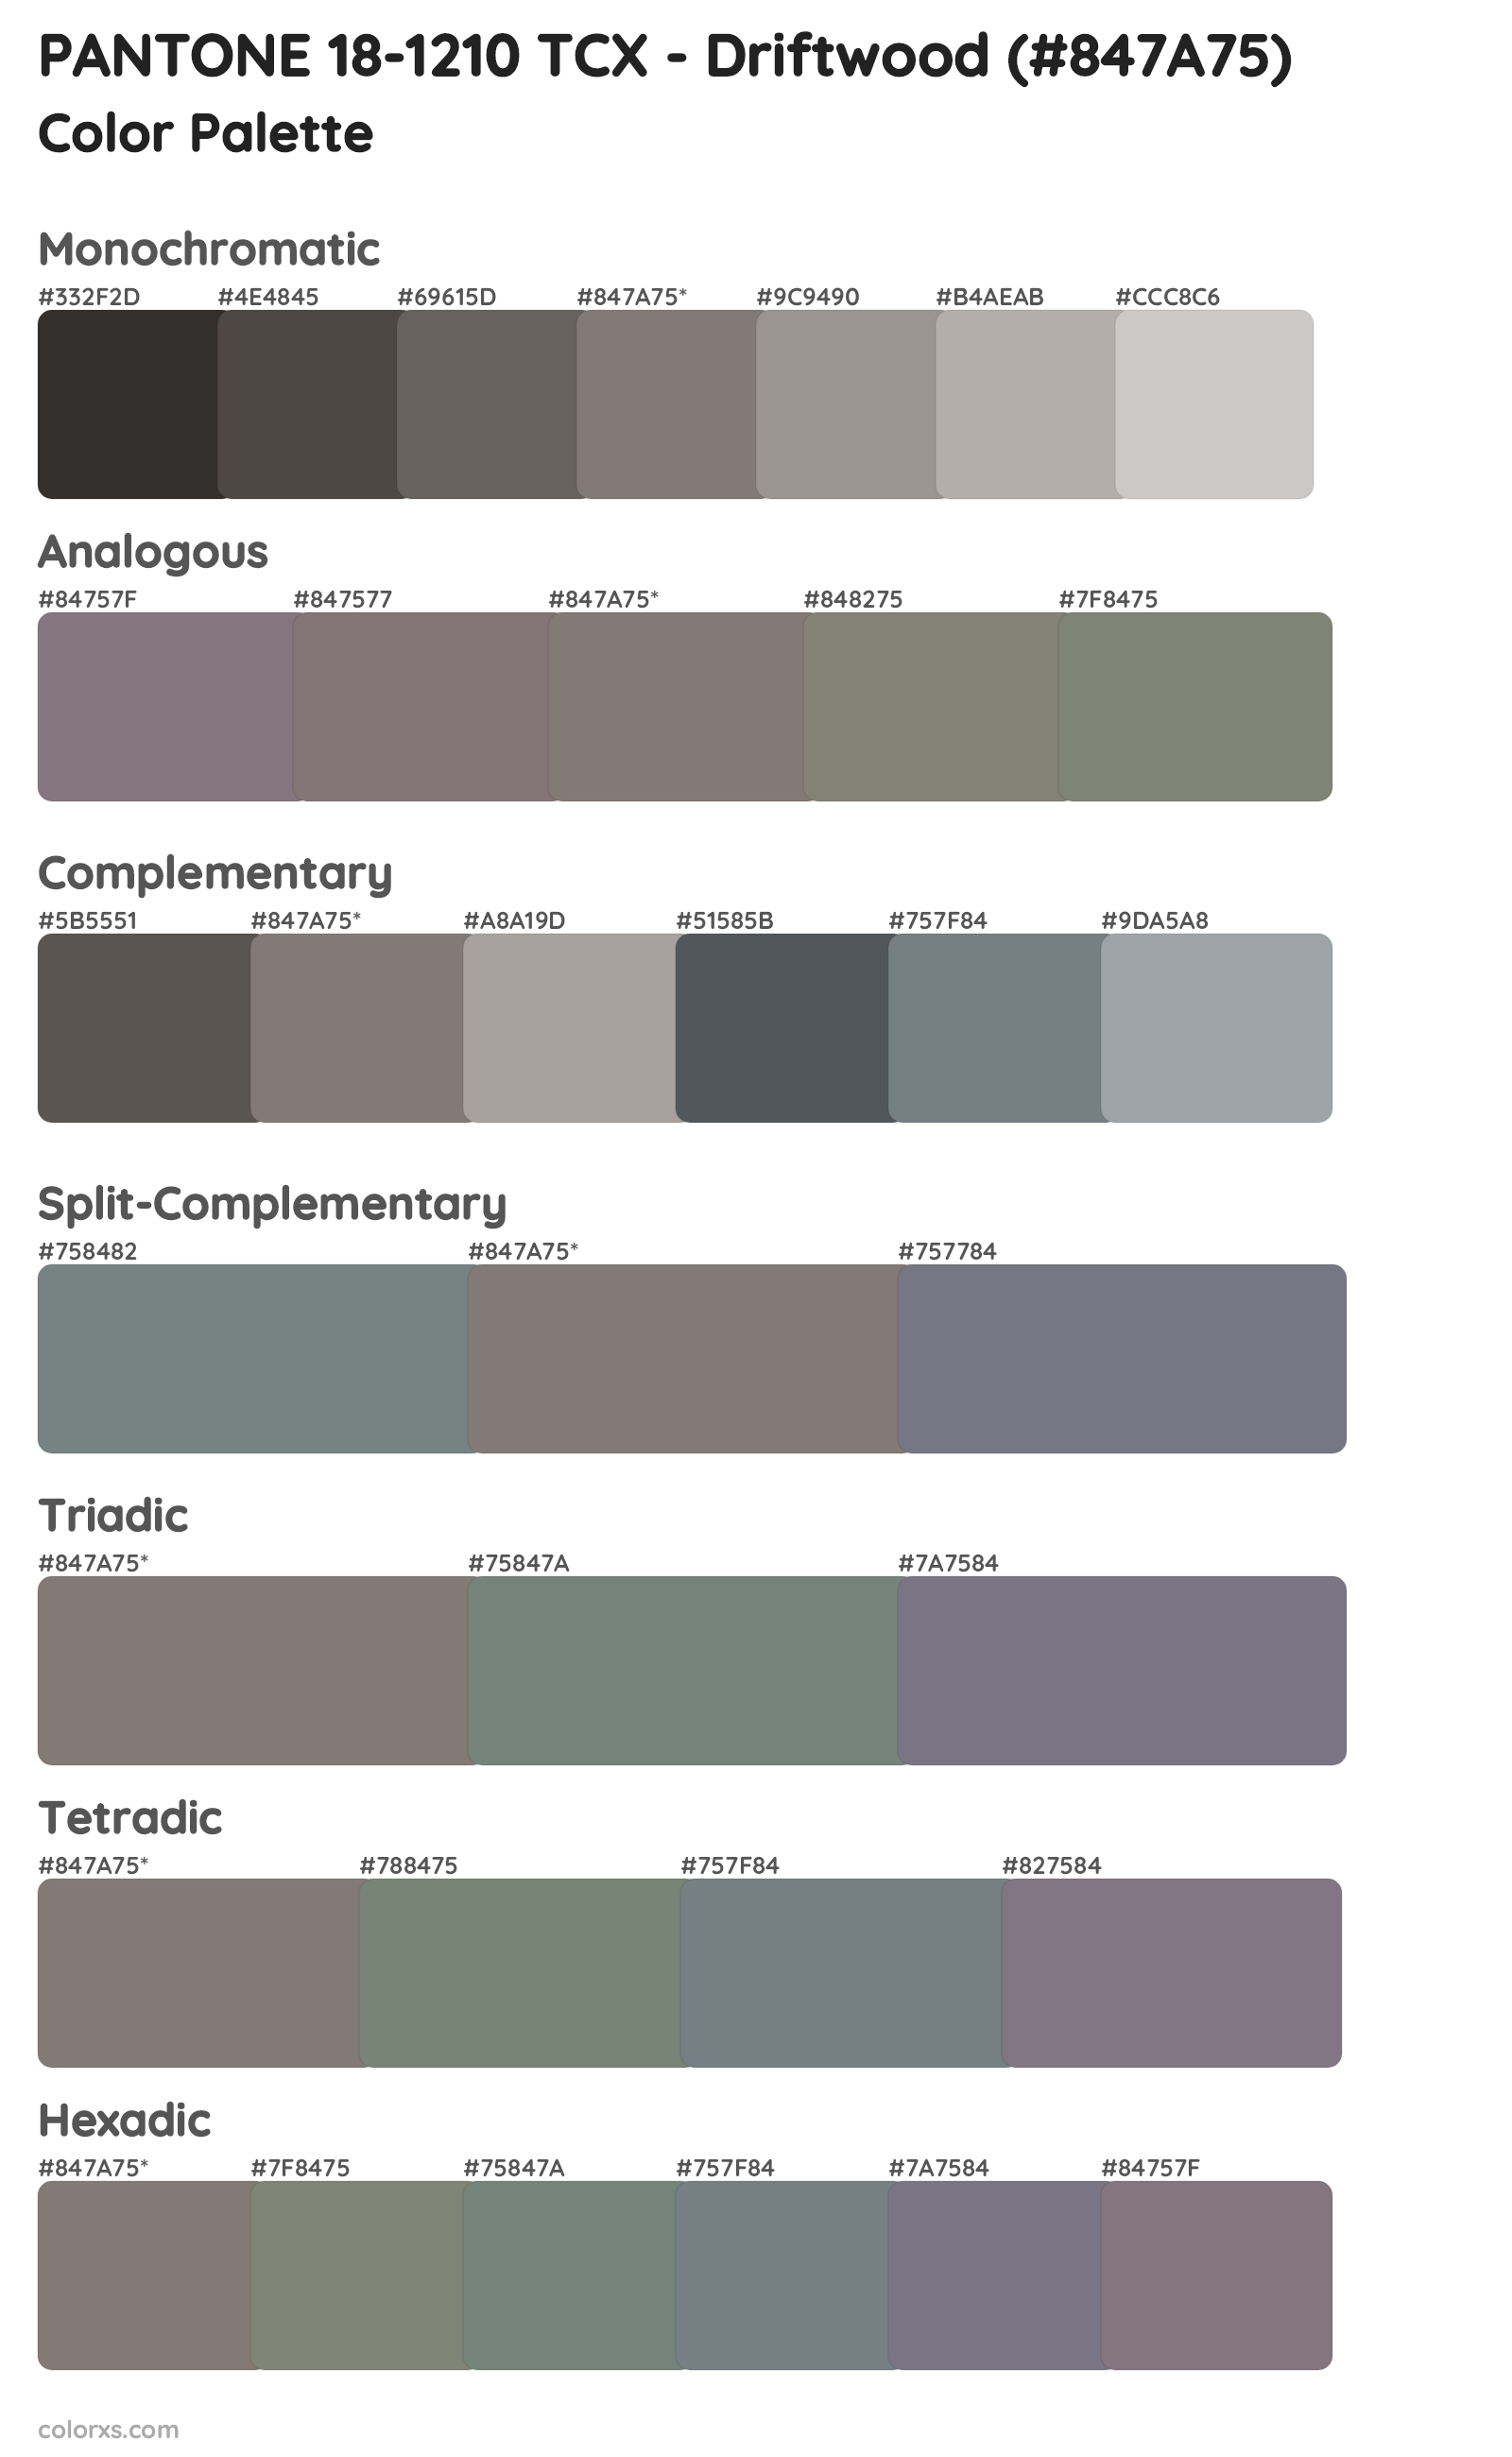 PANTONE 18-1210 TCX - Driftwood Color Scheme Palettes